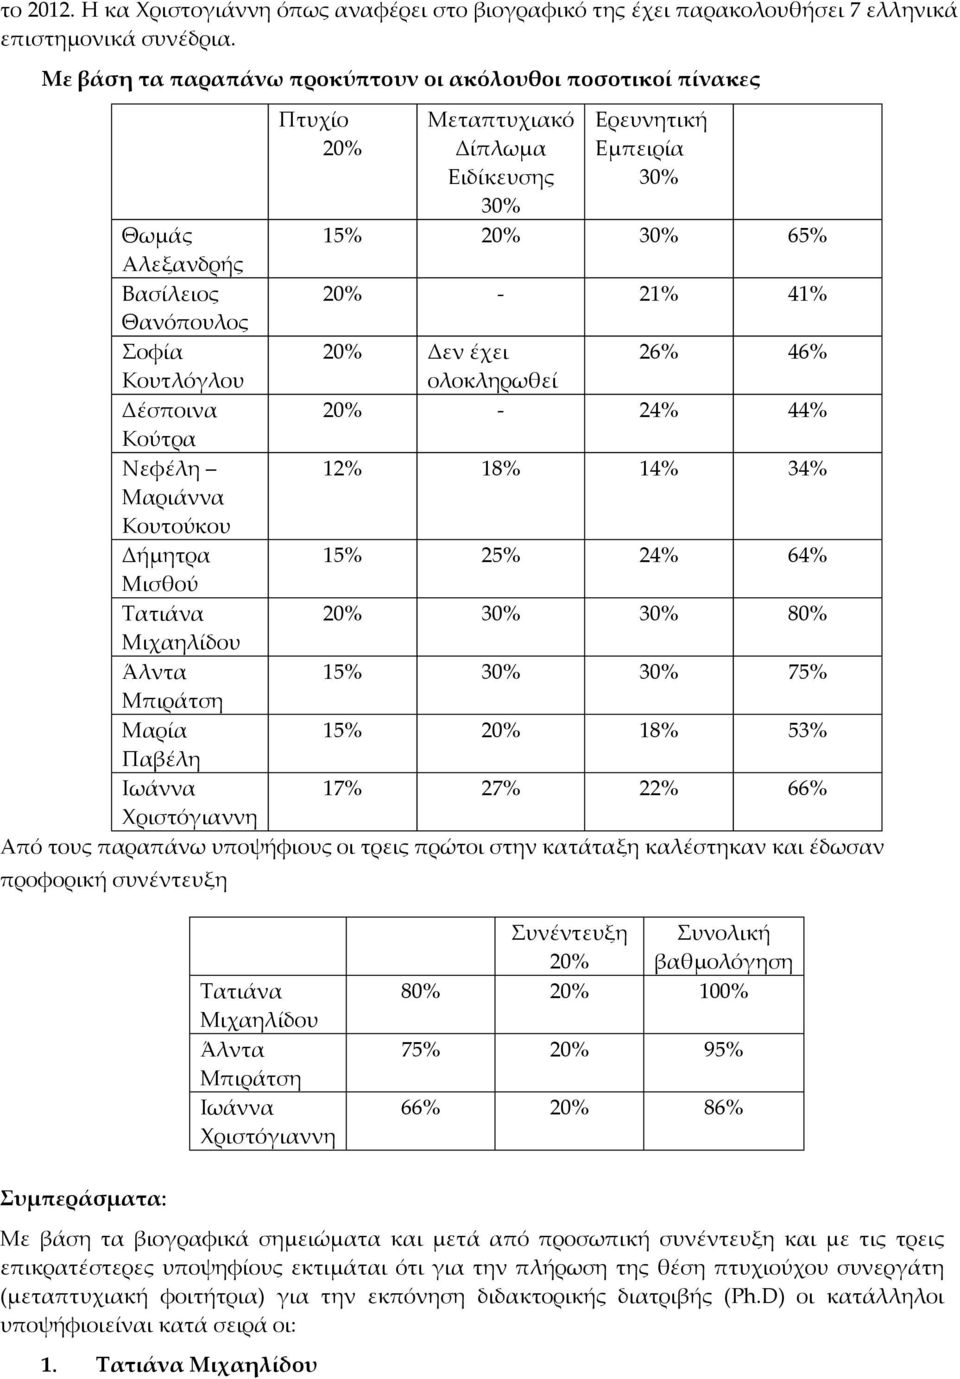 Θανόπουλος Σοφία 20% Δεν έχει 26% 46% Κουτλόγλου ολοκληρωθεί Δέσποινα 20% - 24% 44% Κούτρα Νεφέλη 12% 18% 14% 34% Μαριάννα Κουτούκου Δήμητρα 15% 25% 24% 64% Μισθού Τατιάνα 20% 30% 30% 80% Μιχαηλίδου